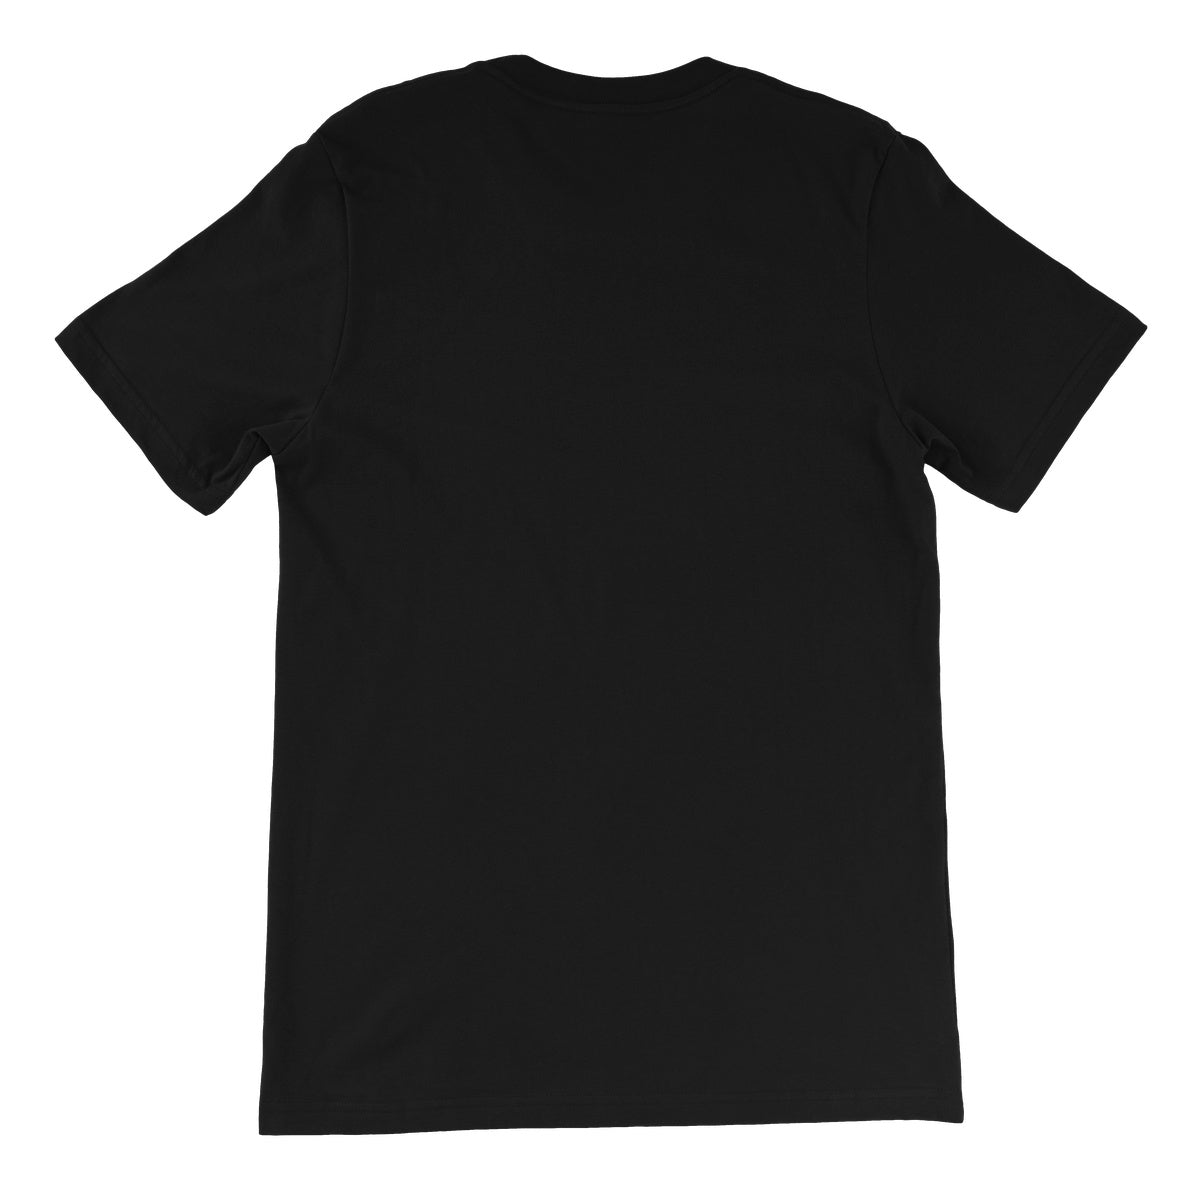 Bound For Glory 2020 - Trey Unisex Short Sleeve T-Shirt